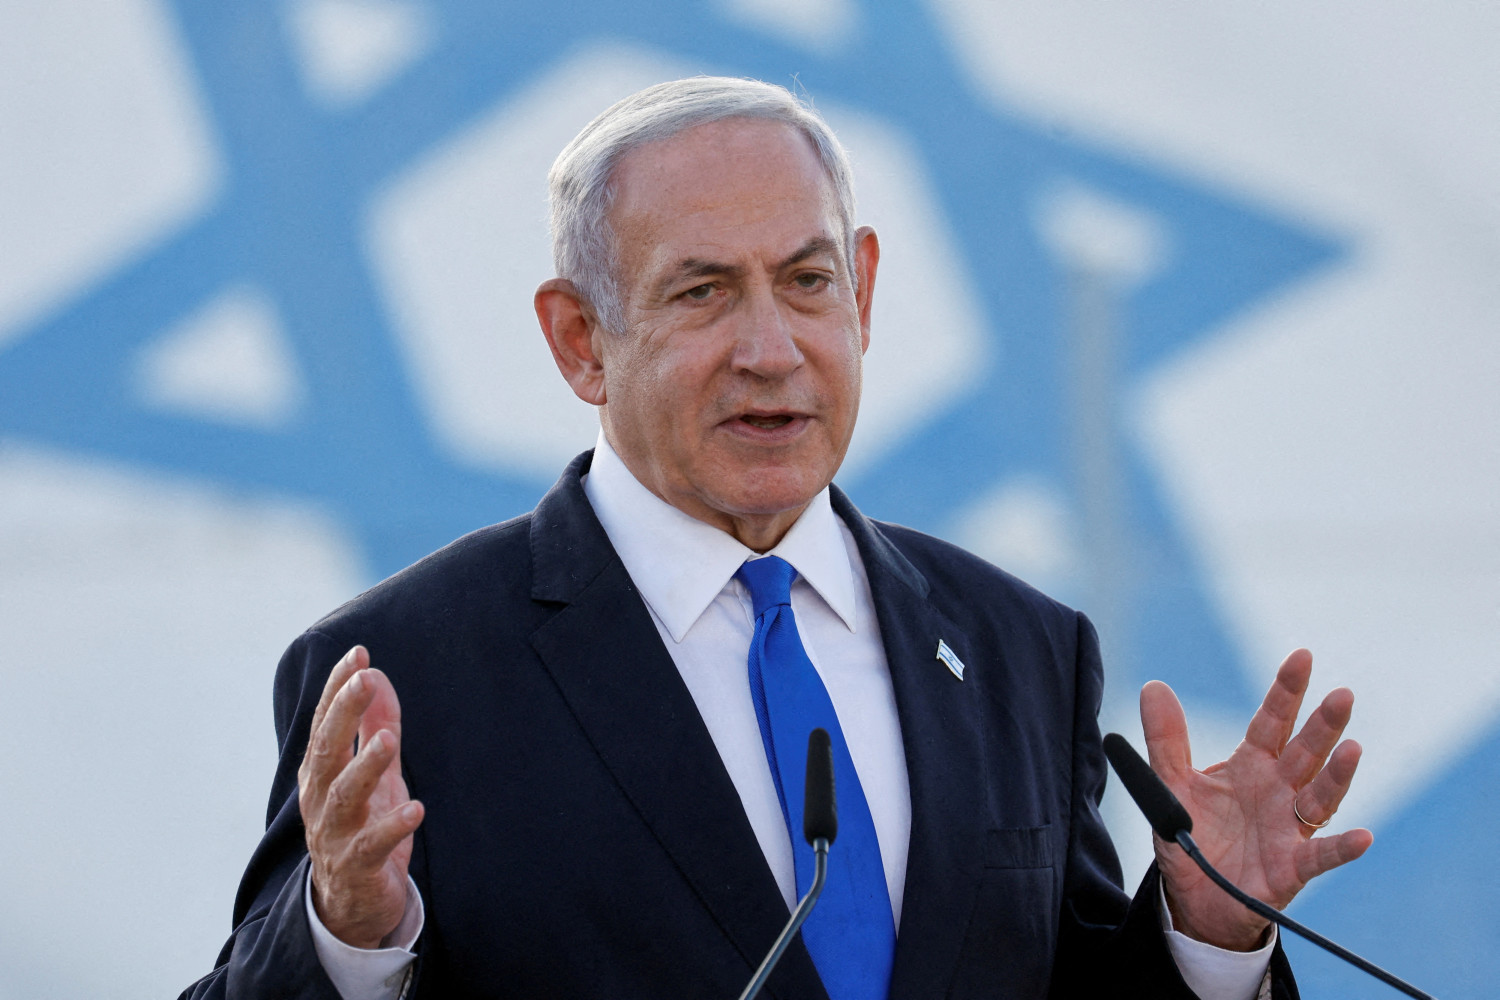 https://img5.s3wfg.com/web/img/images_uploaded/7/5/le-premier-ministre-israelien-benjamin-netanyahu-prononce-un-discours-a-lezion-en-israel_rsz.jpg